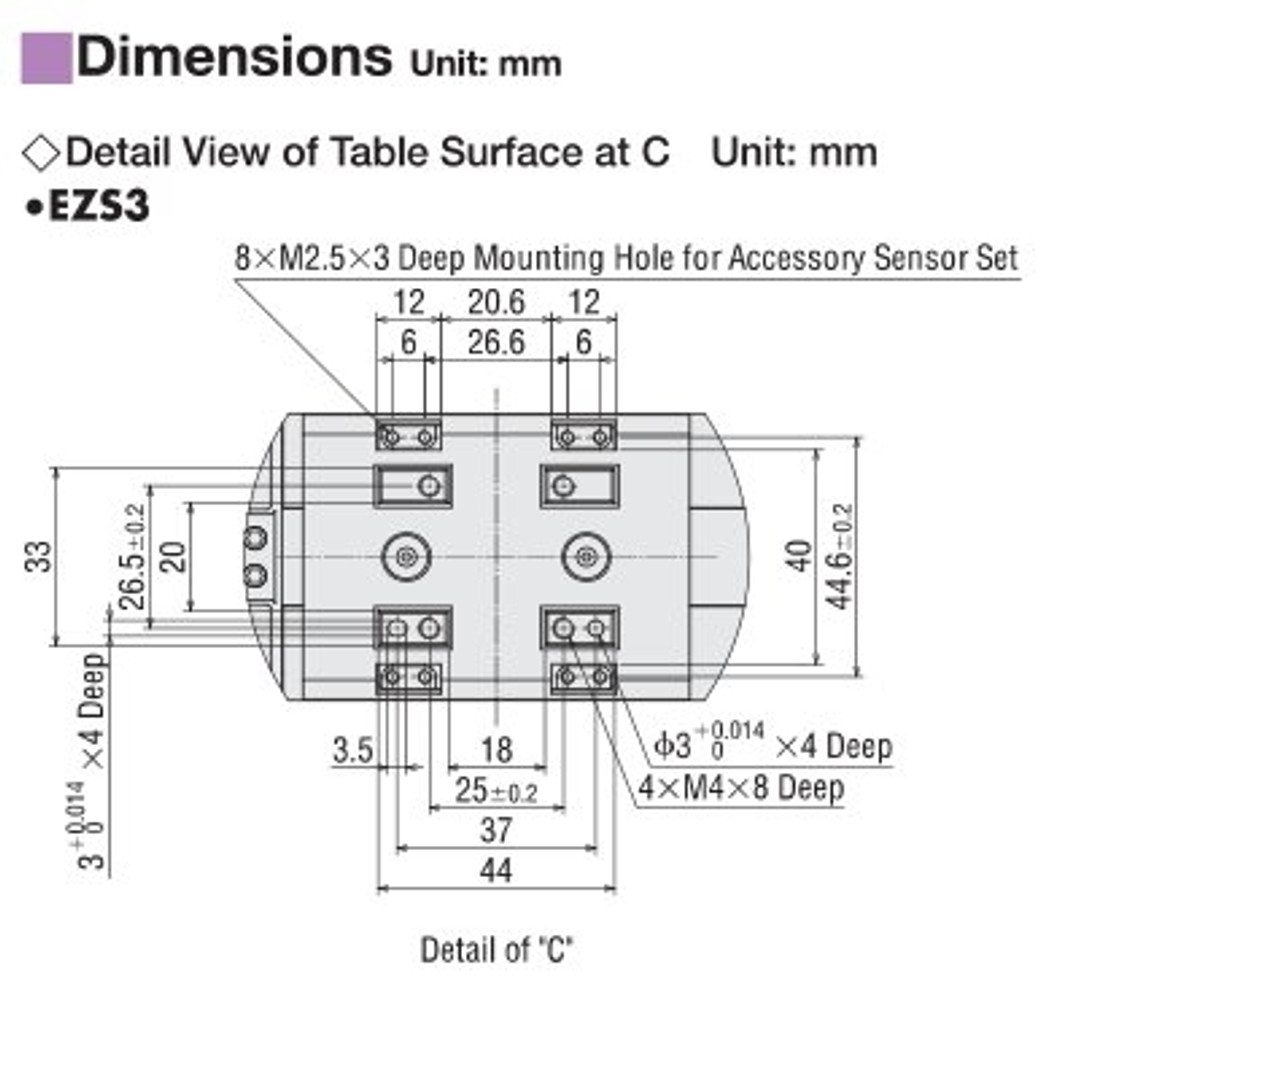 EZSM3D015AZMC - Dimensions